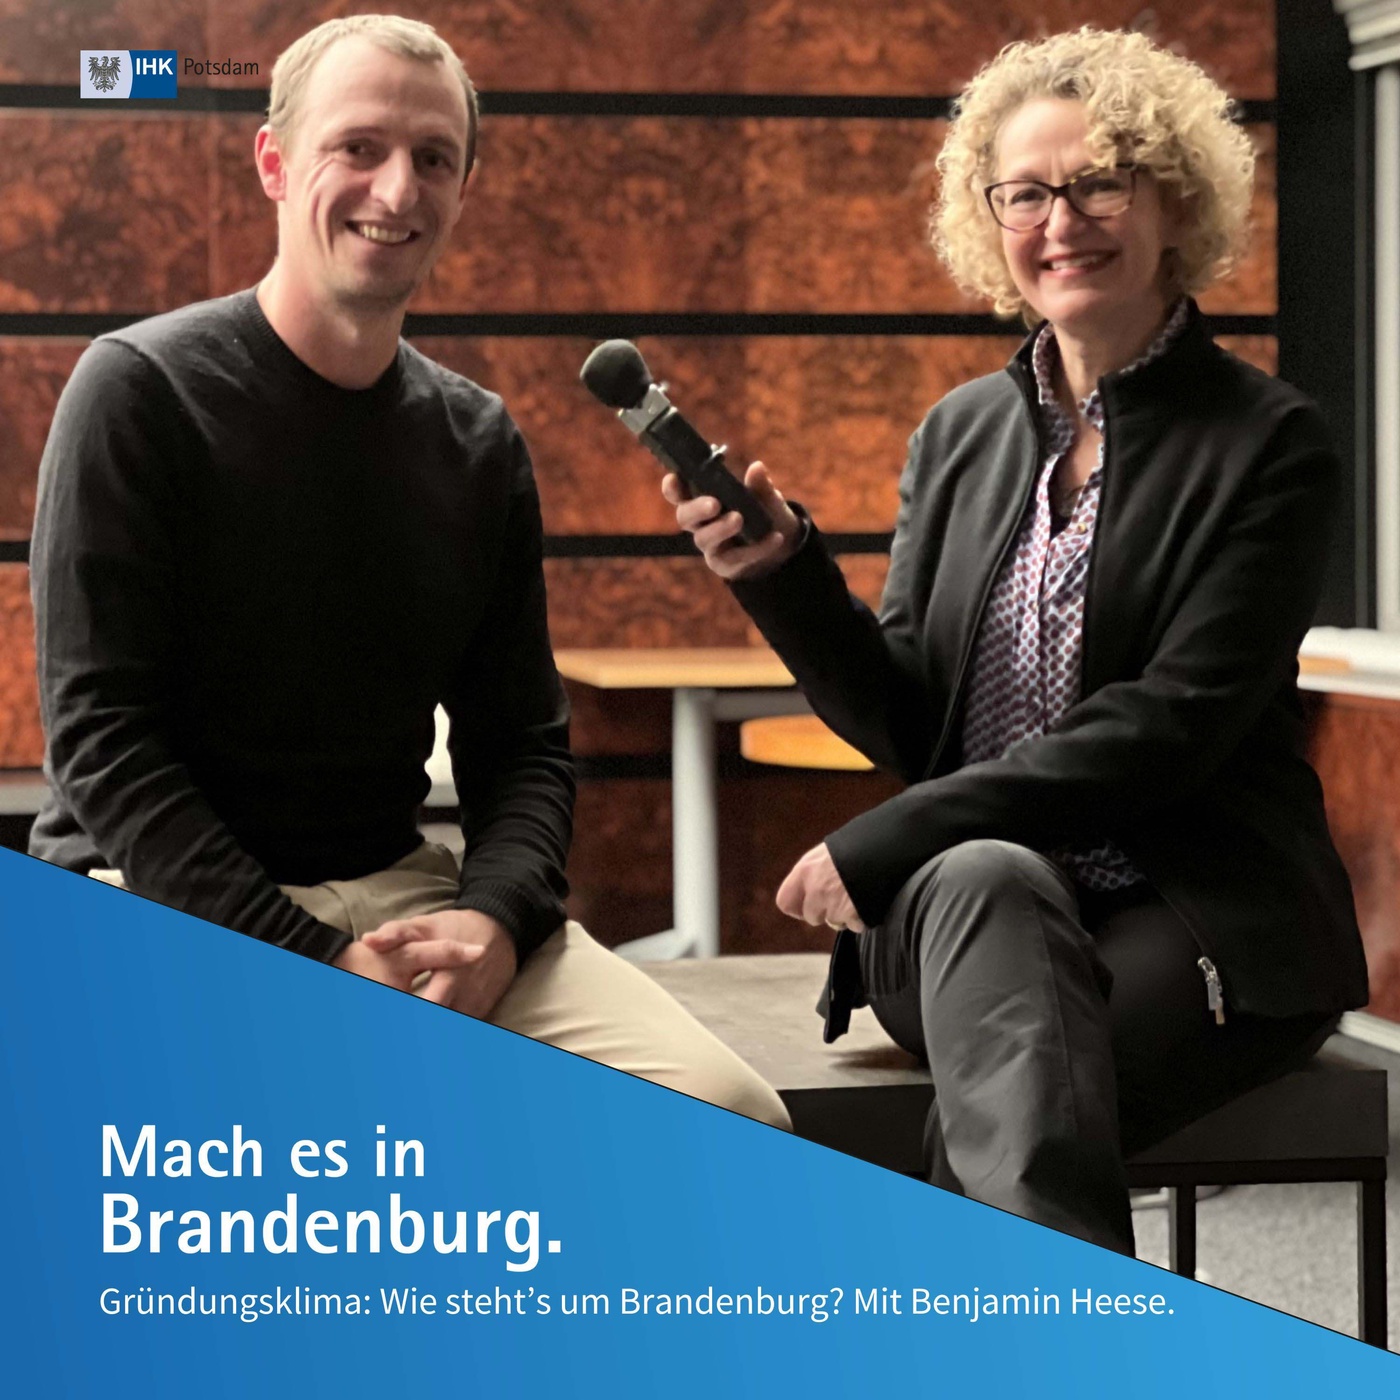 Gründungsklima: Wie steht’s um Brandenburg? | Mach es in Brandenburg (17)